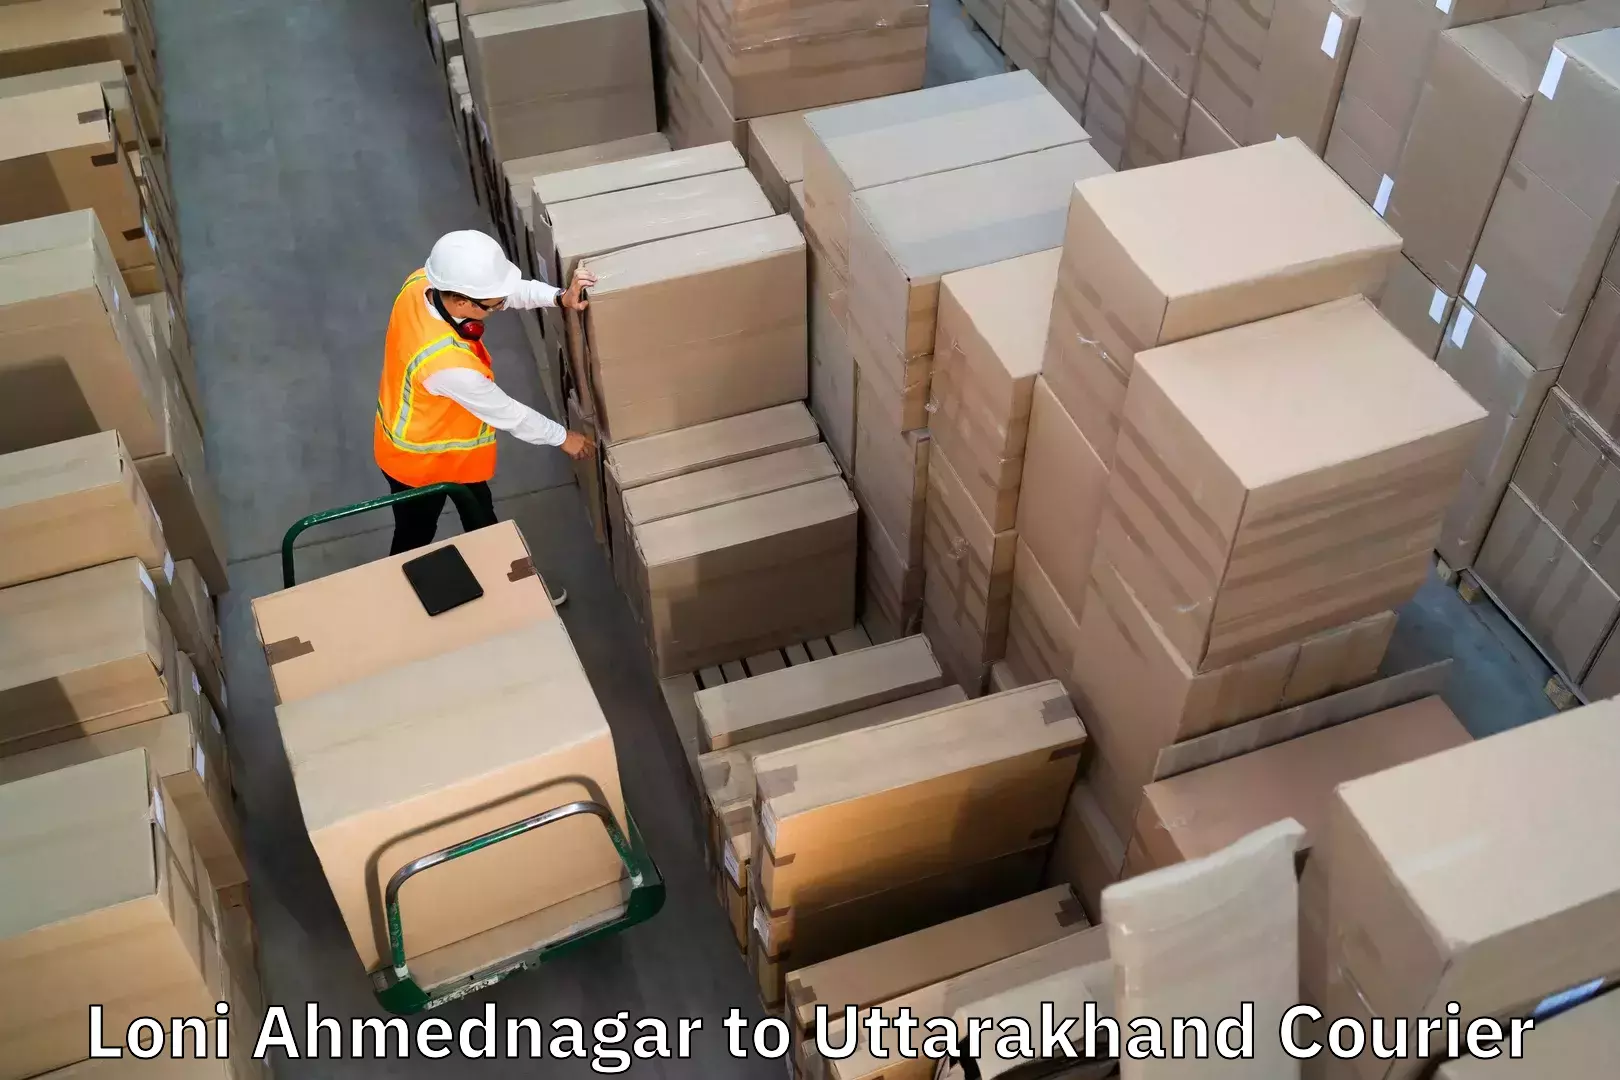 Baggage courier rates calculator Loni Ahmednagar to Nainital